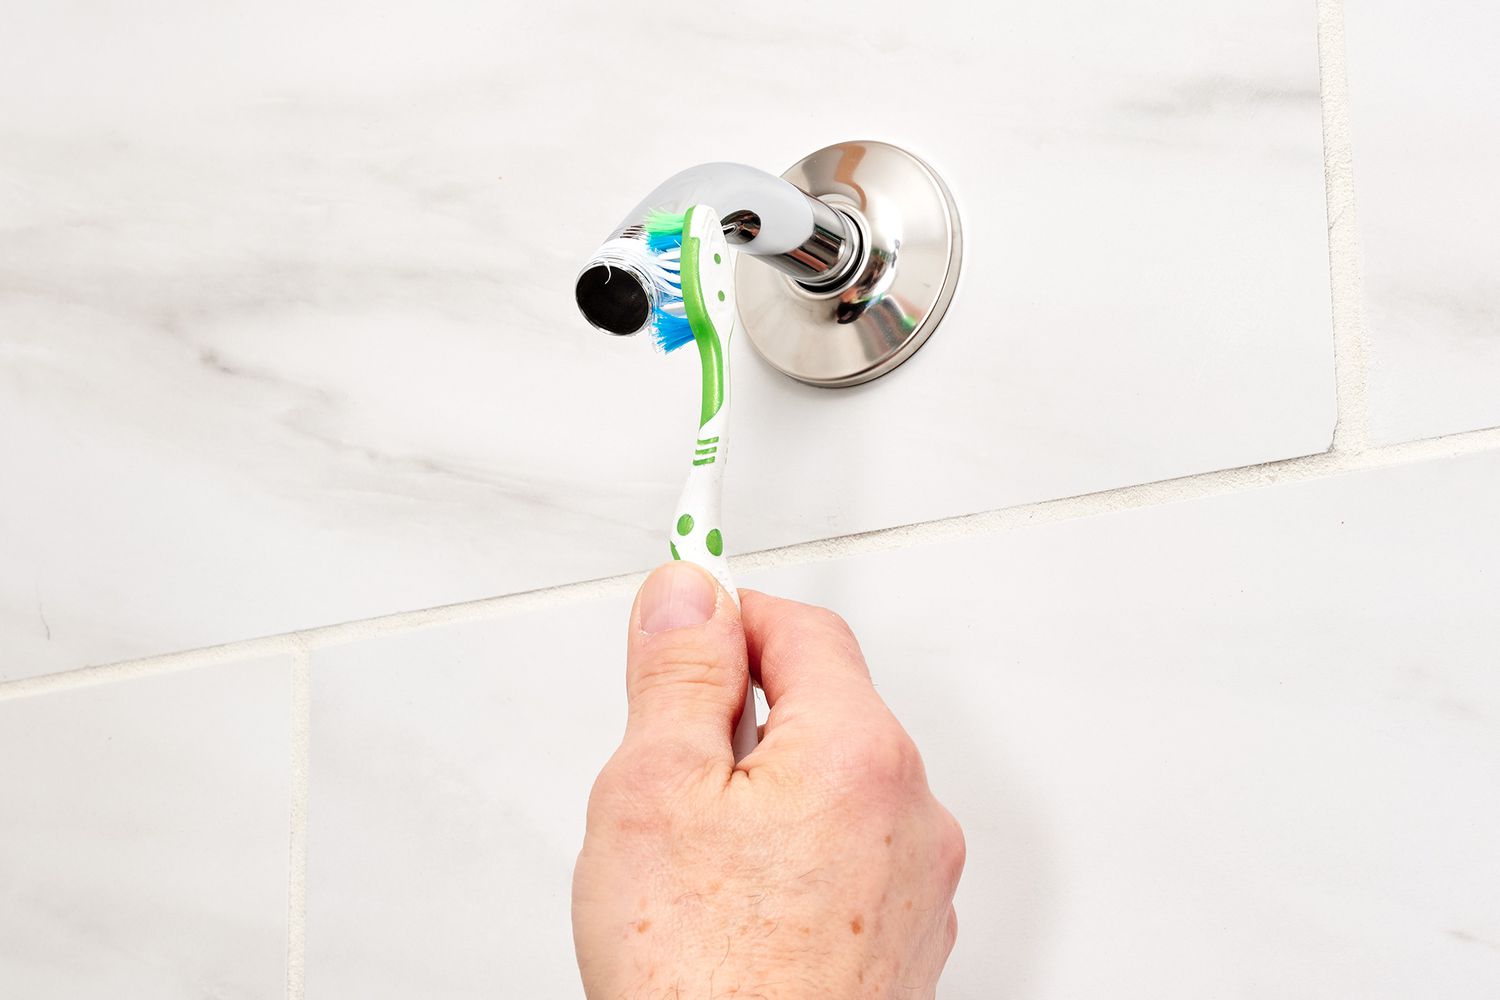 Old toothbrush scrubbing gunk off shower arm threads